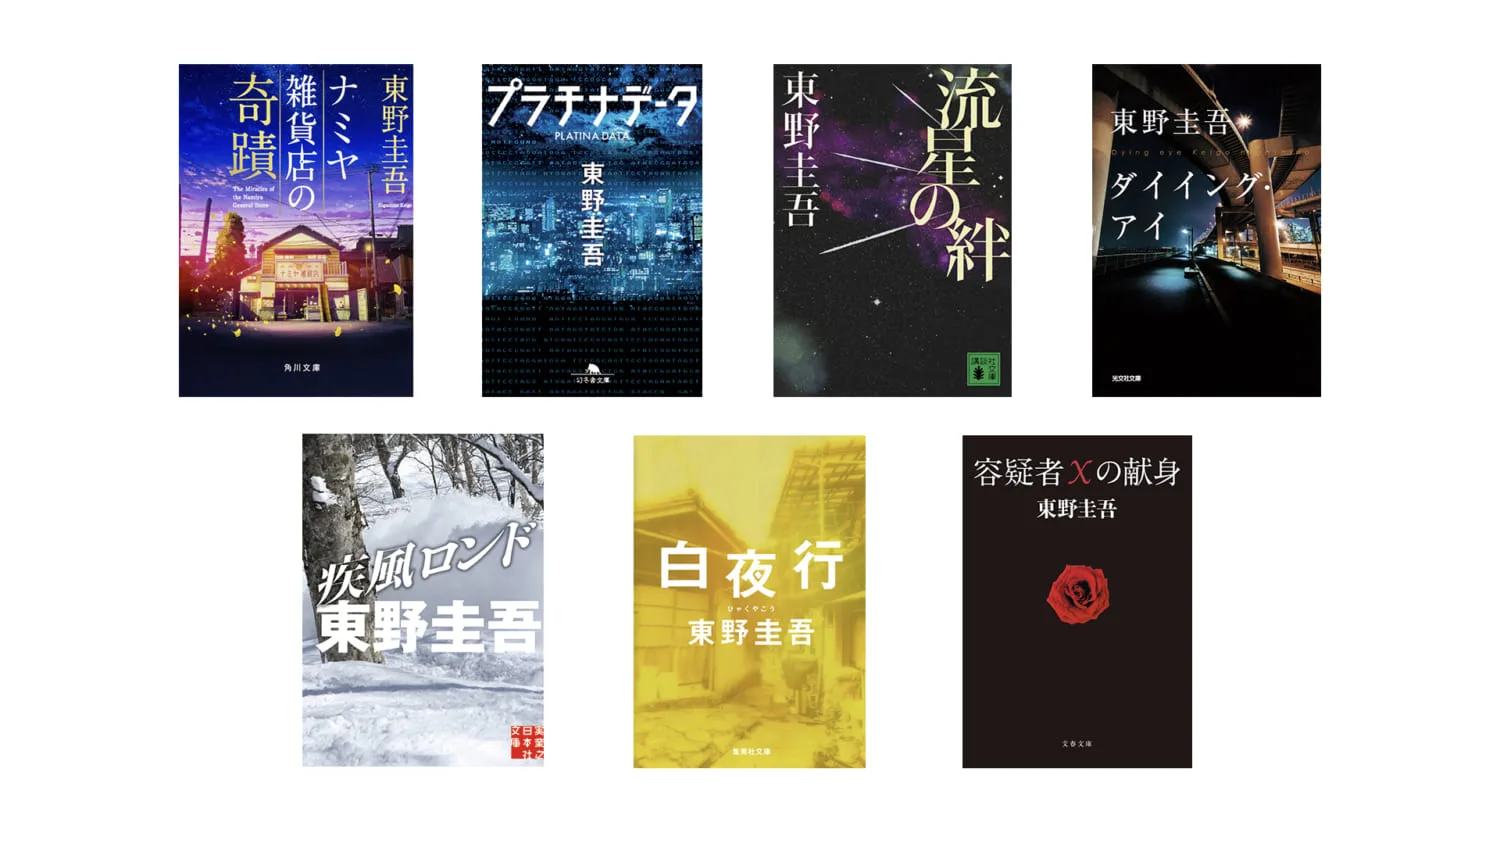 東野圭吾のベストセラー７作が初の電子書籍化！『容疑者Xの献身』『白夜行』など ARBAN